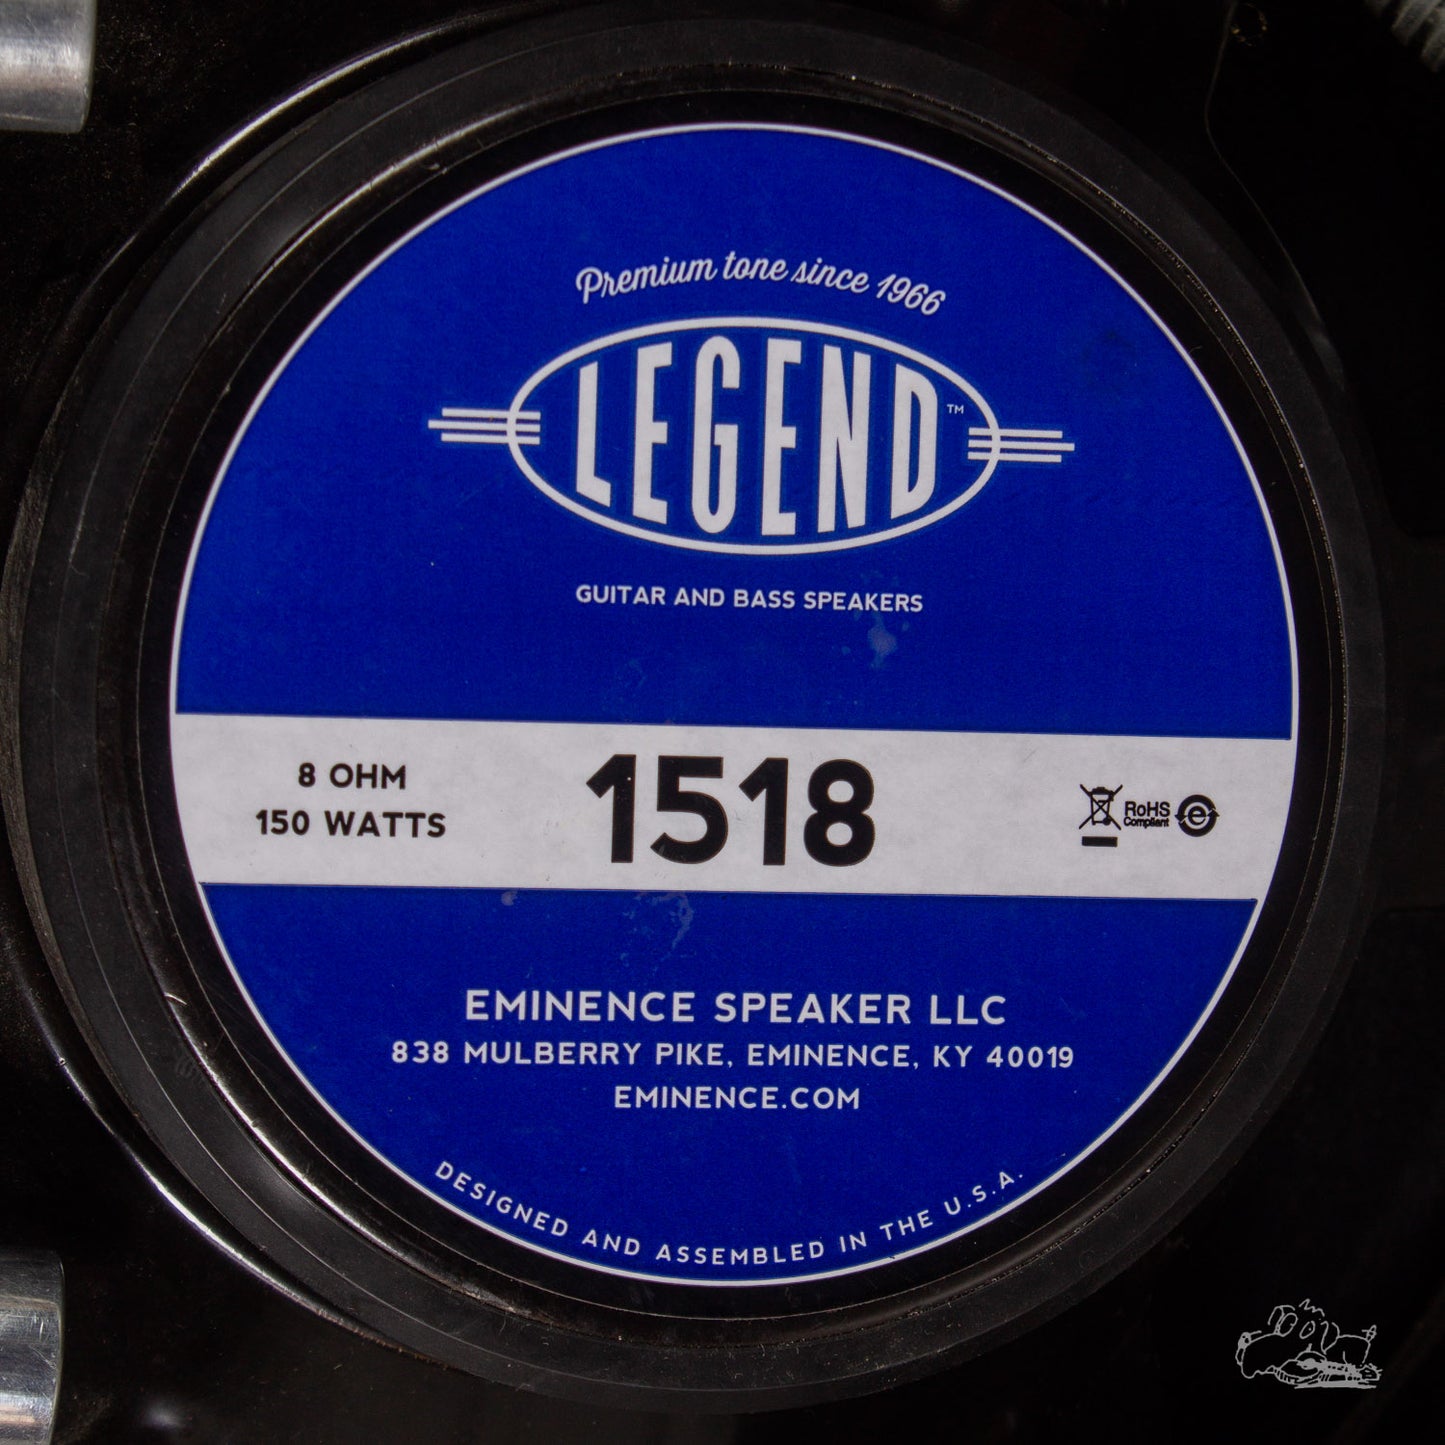 2013 Fender Excelsior Amplifier - Holy Grail Reverb Mod